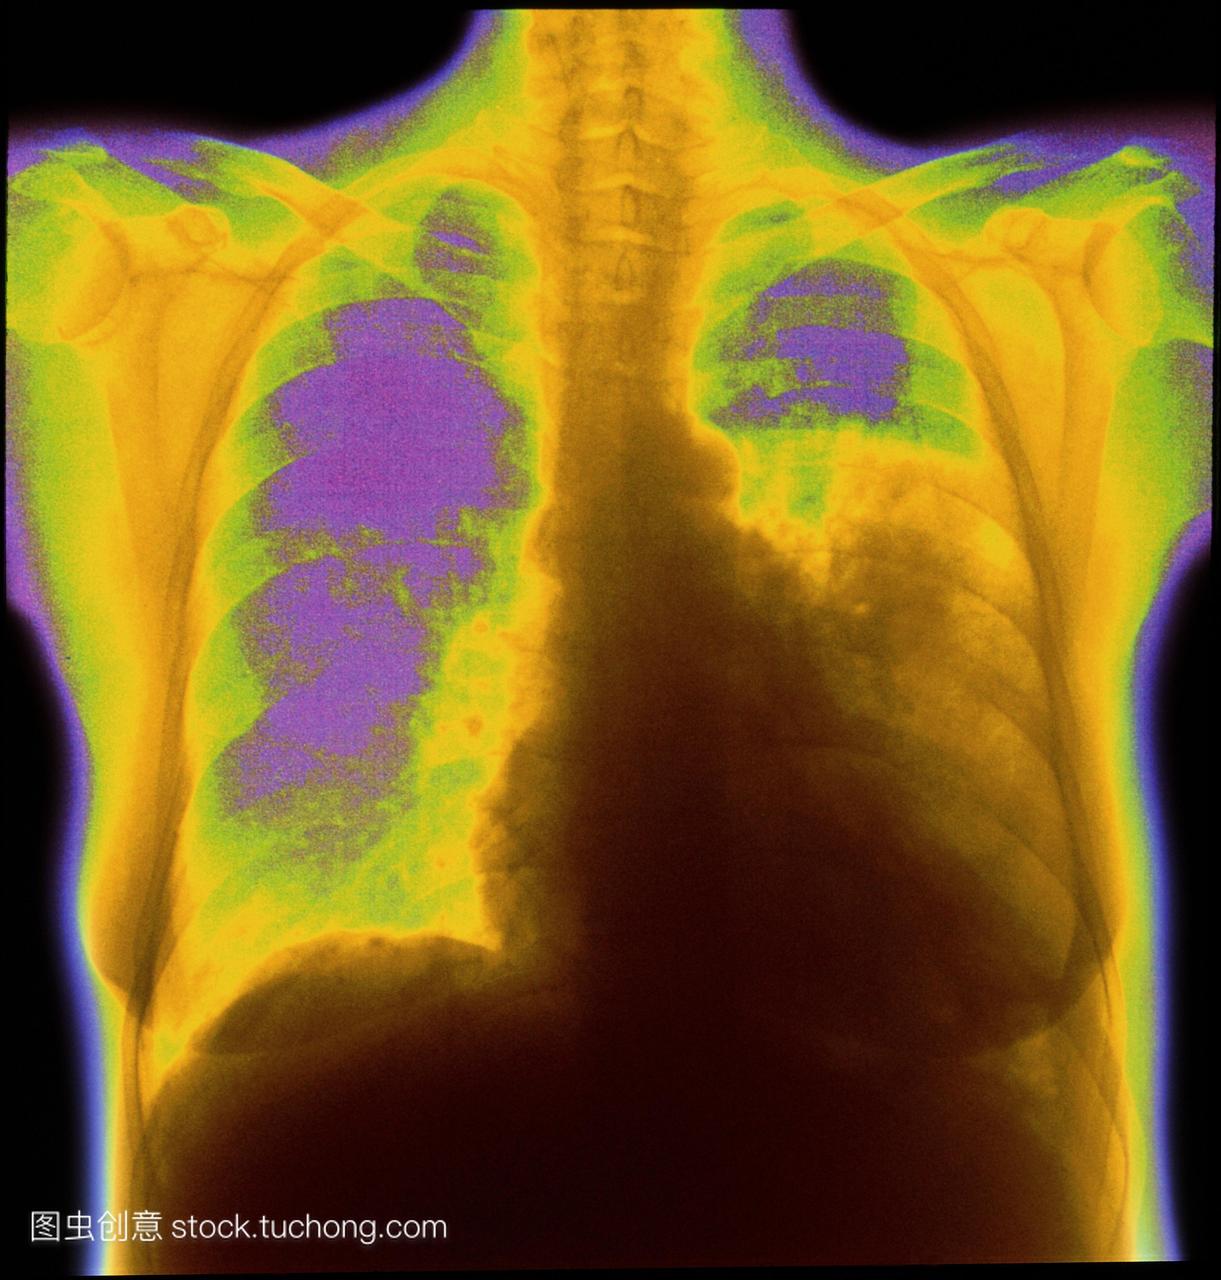 大叶性肺炎。彩色委员会的胸部x光片显示病人